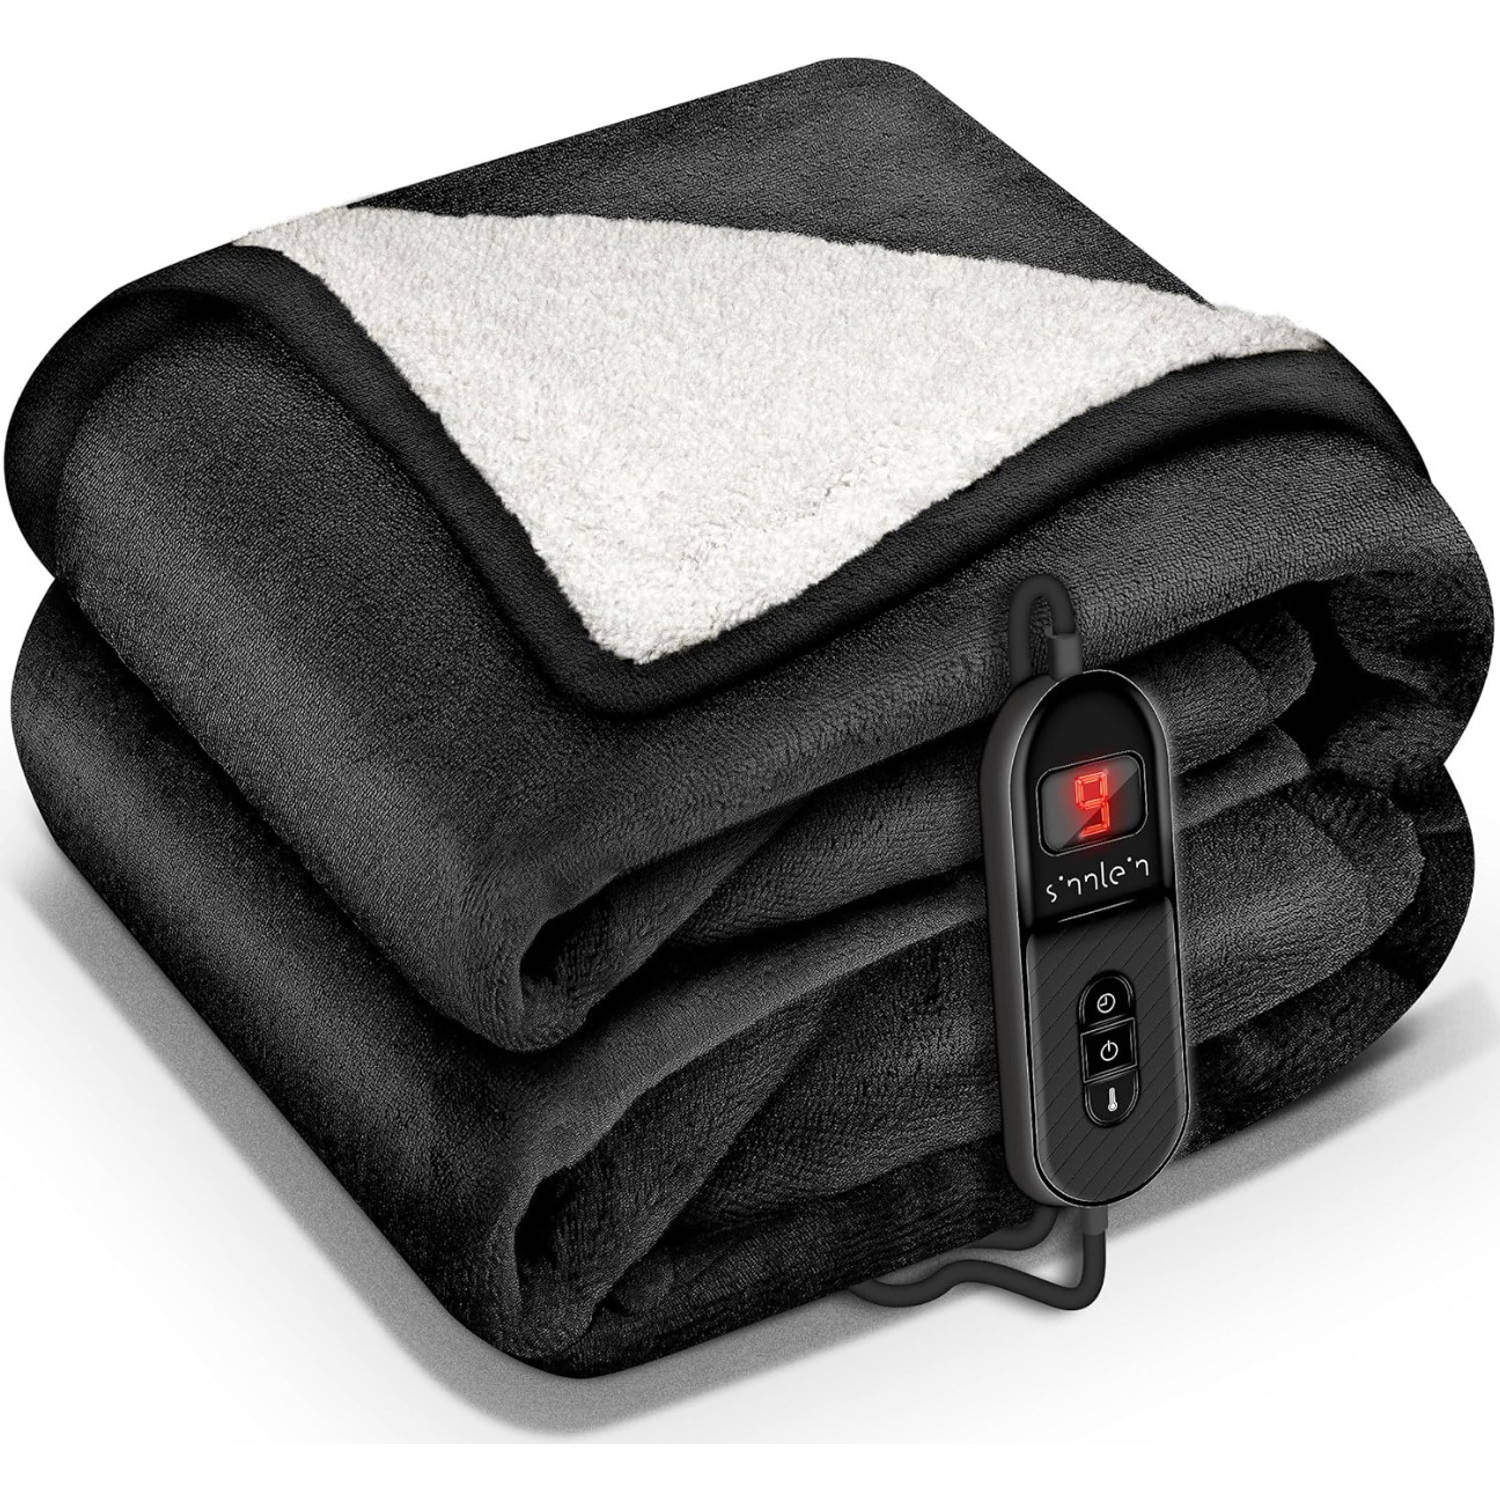 Sinnlein- Elektrische deken met automatische uitschakeling, zwart, 160x120 cm, warmtedeken met 9 tem